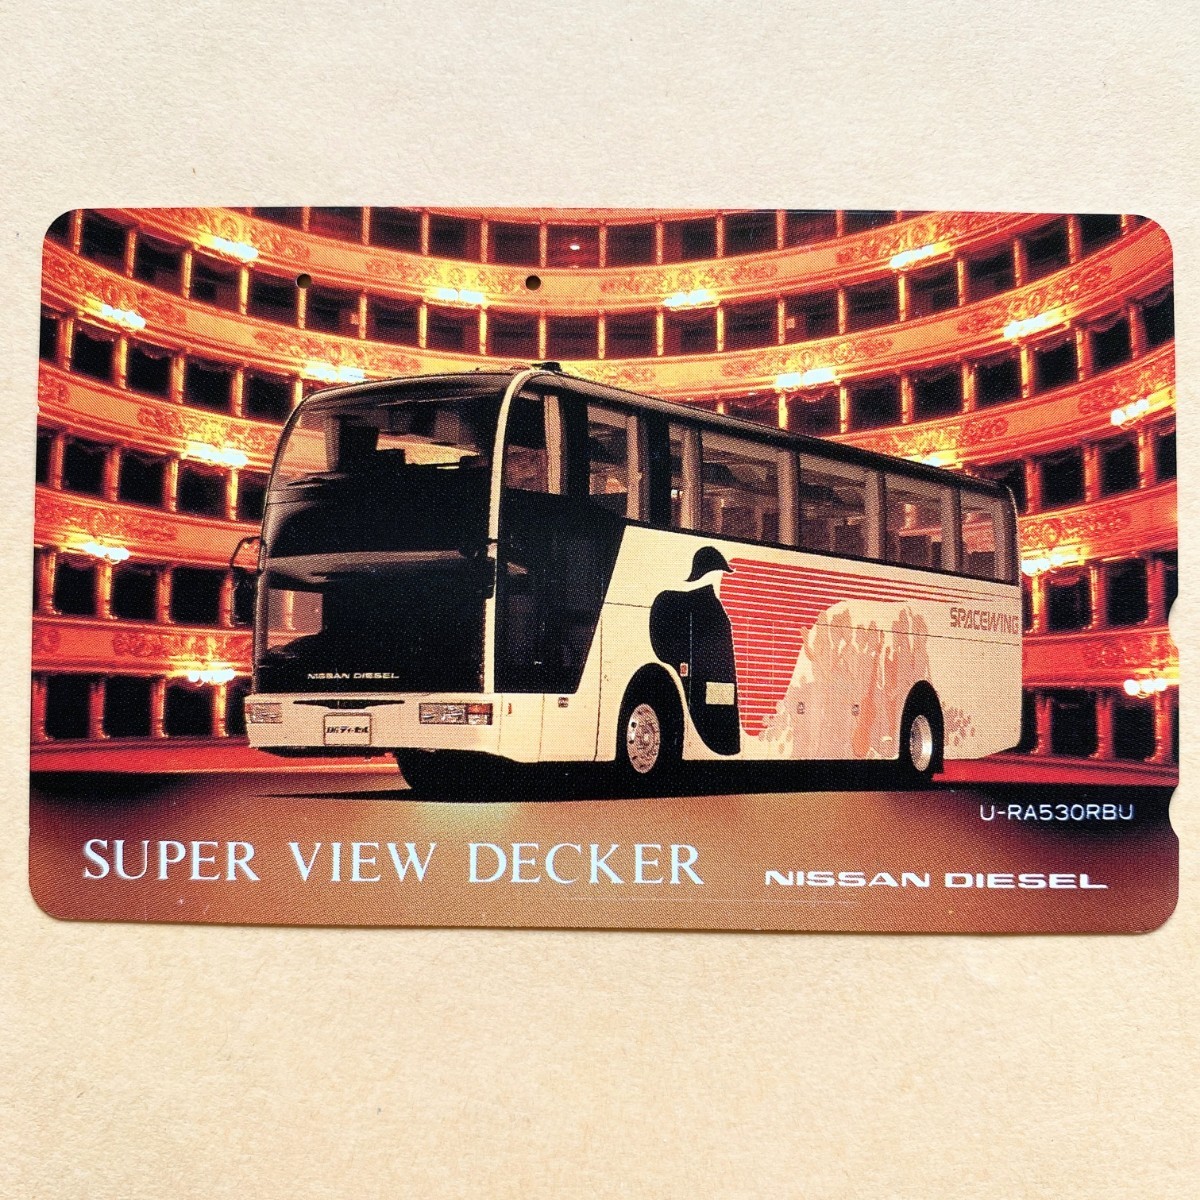 [ used ] bus telephone card SUPER VIEW DECKER NISSAN DIESEL